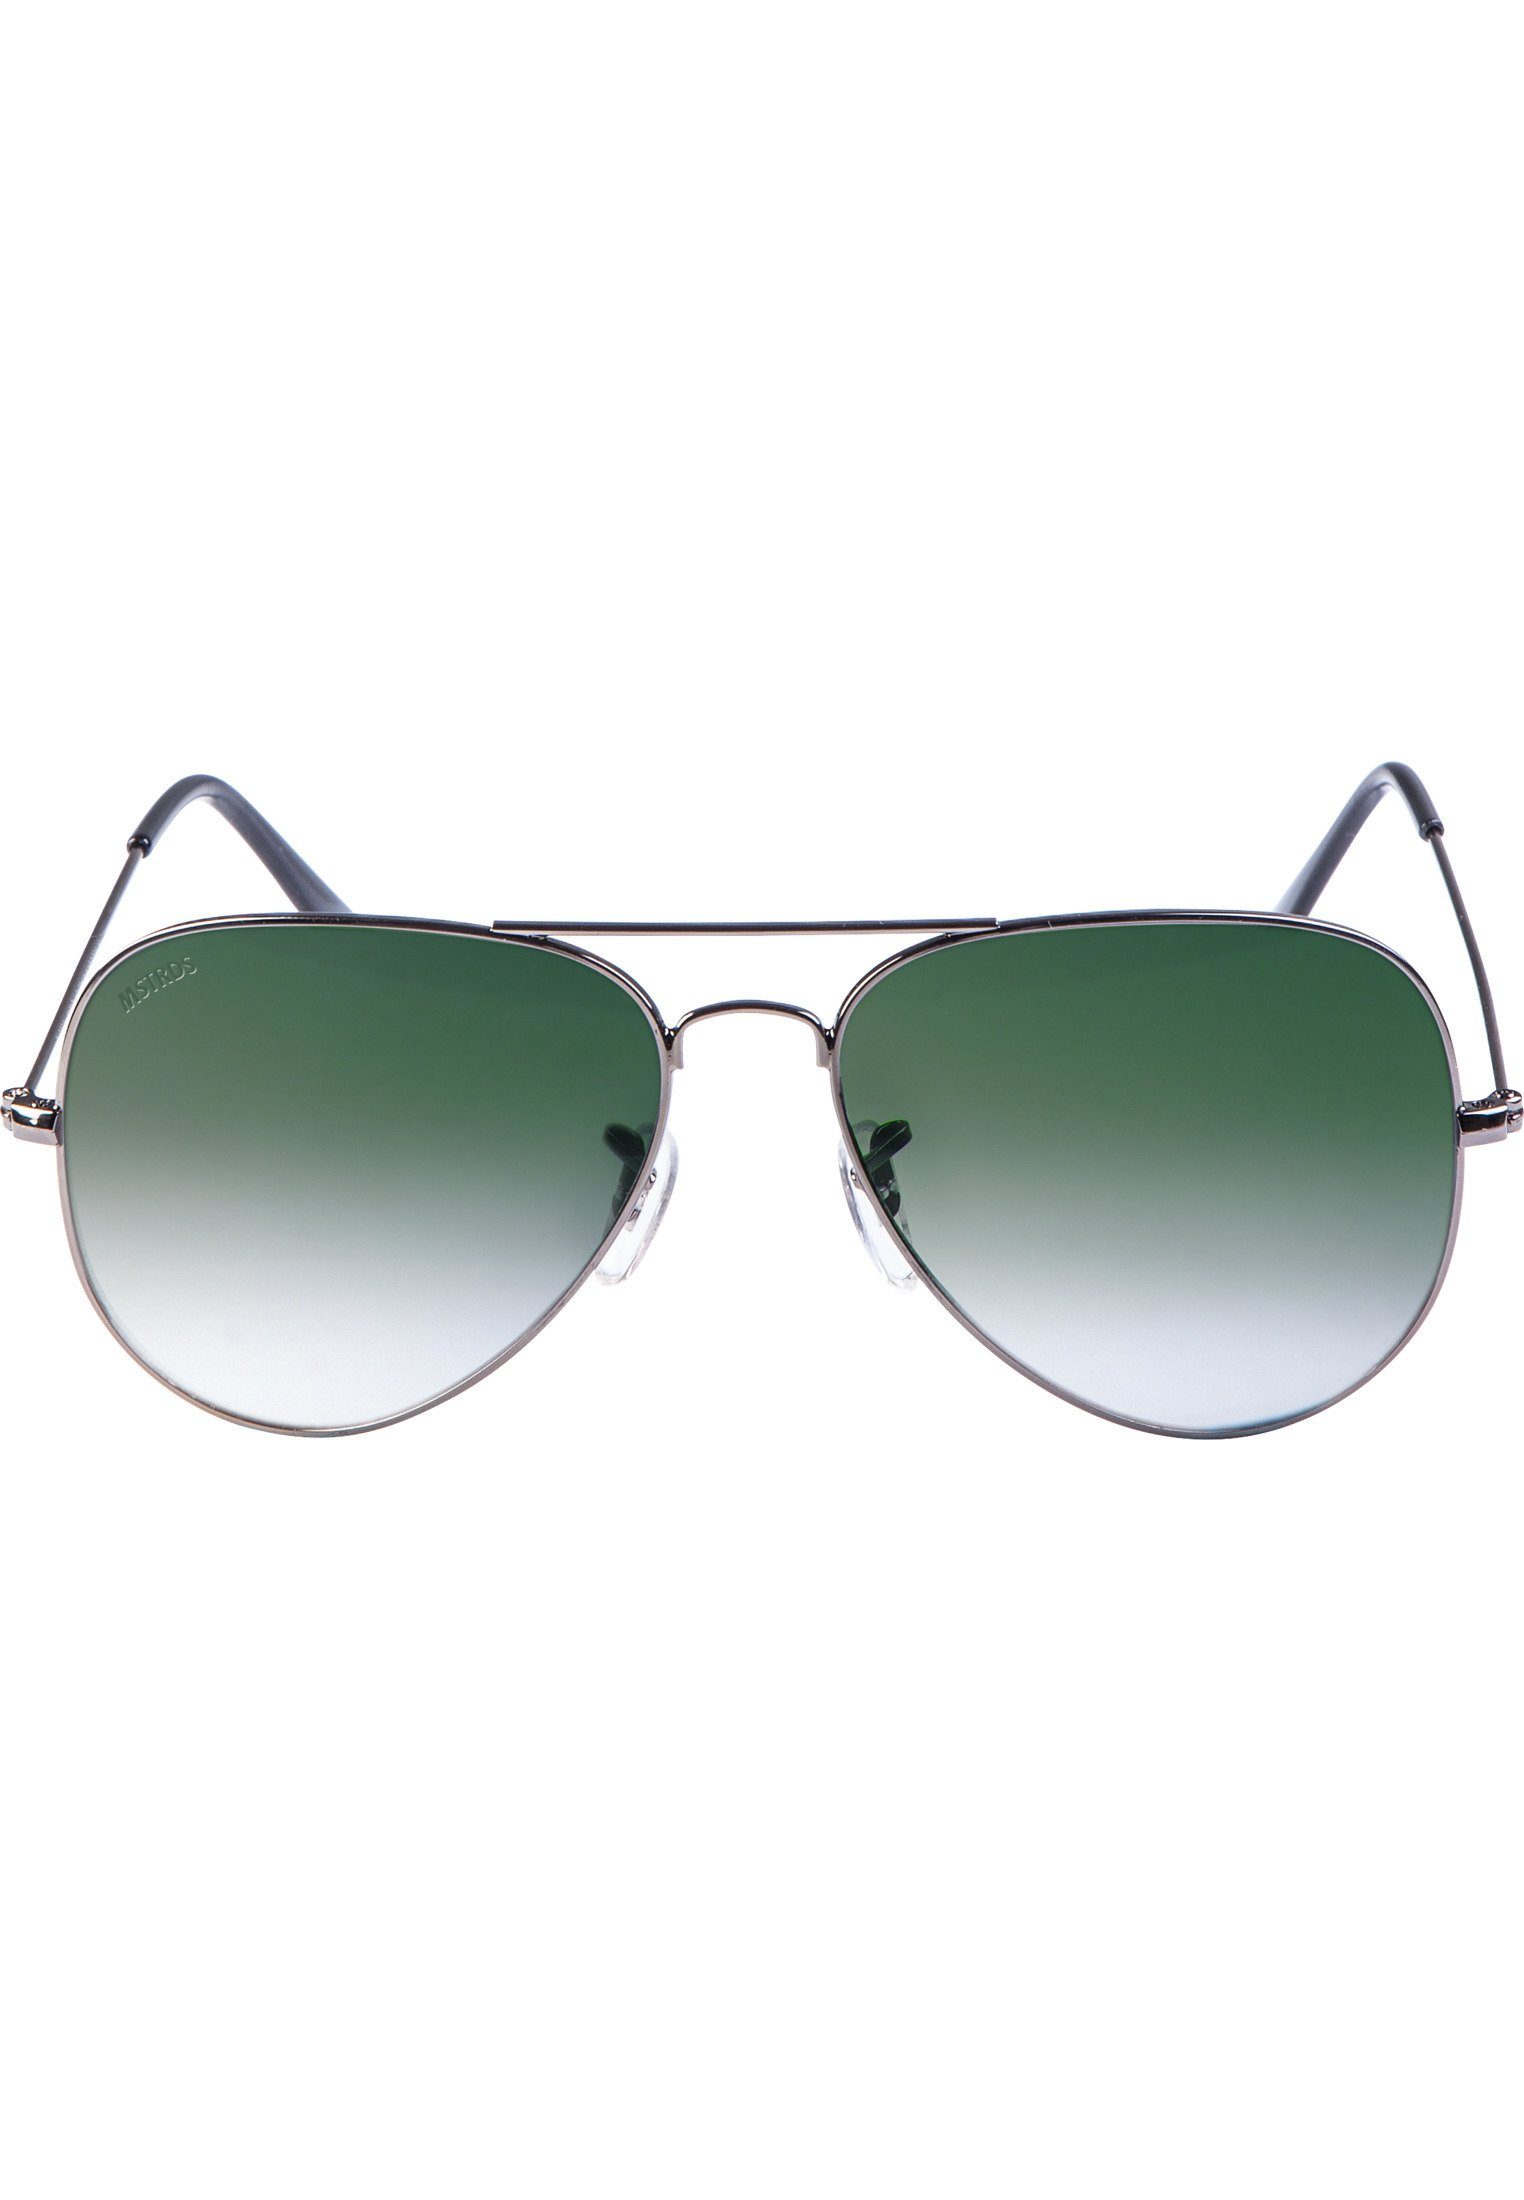 MSTRDS Sonnenbrille Accessoires Sunglasses PureAv gun/green